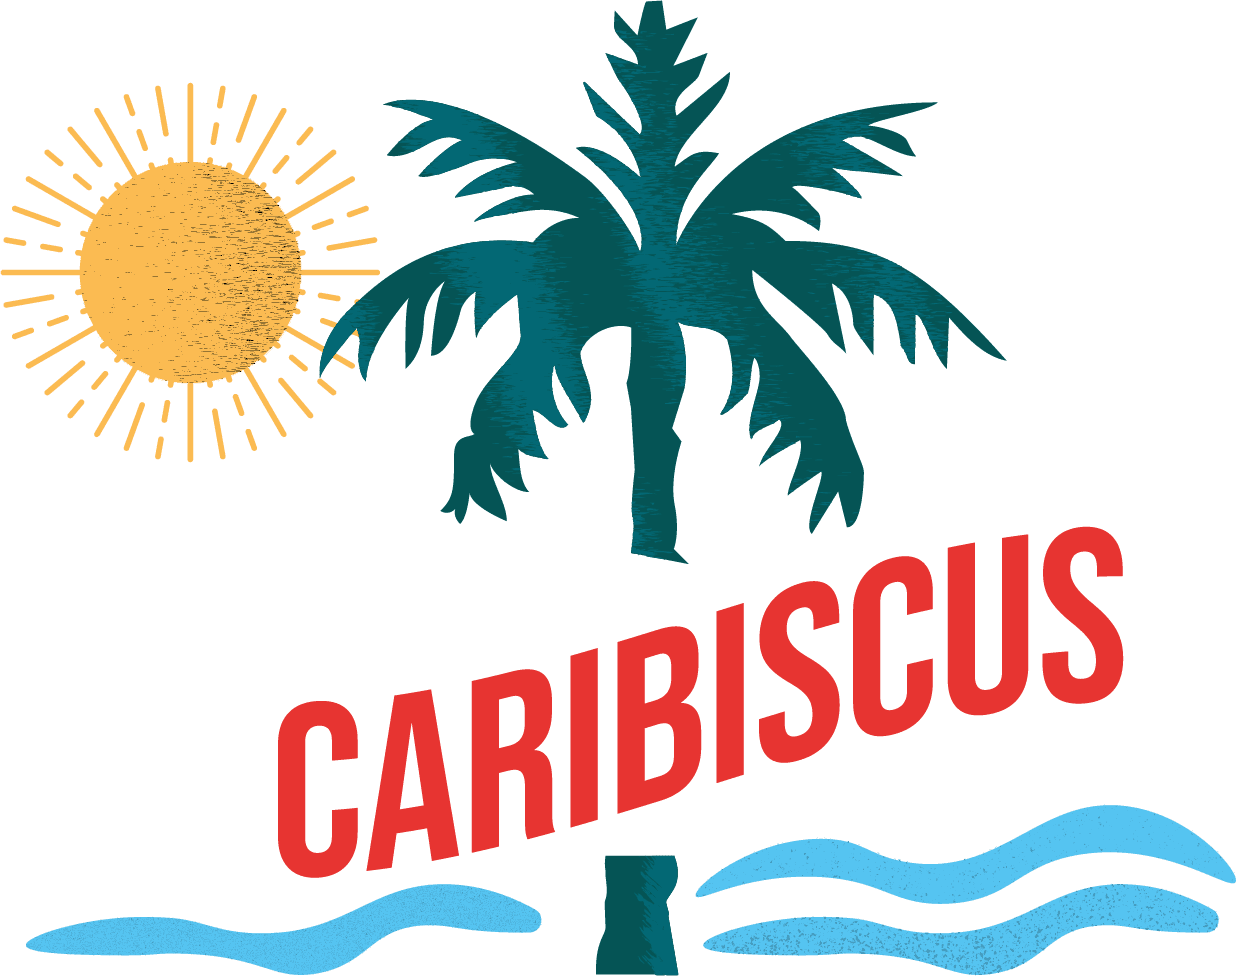 Caribiscus Caribbean Restaurant & Takeaway